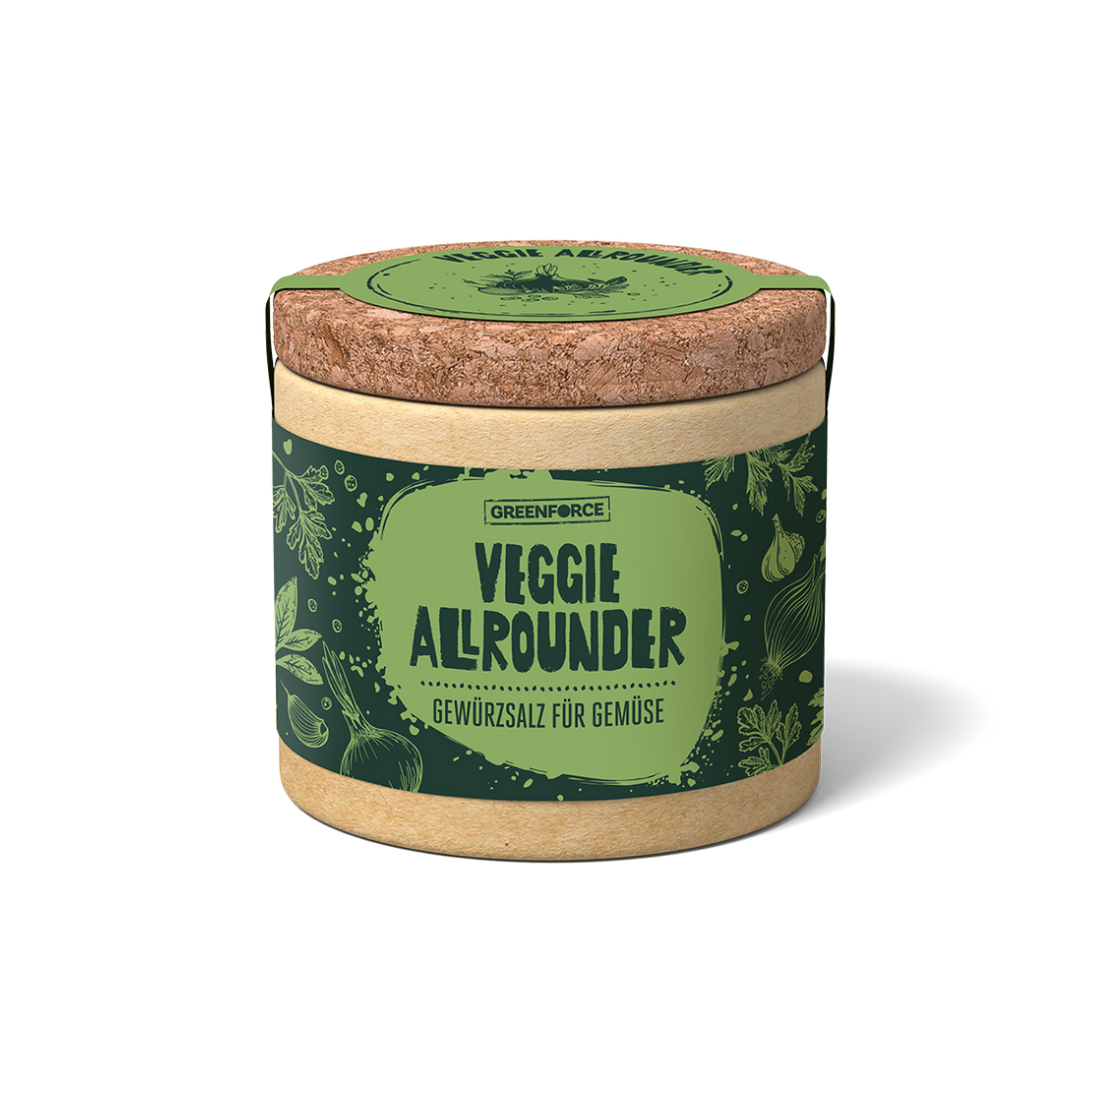 Veggie Allrounder – seasoning salt for vegetables